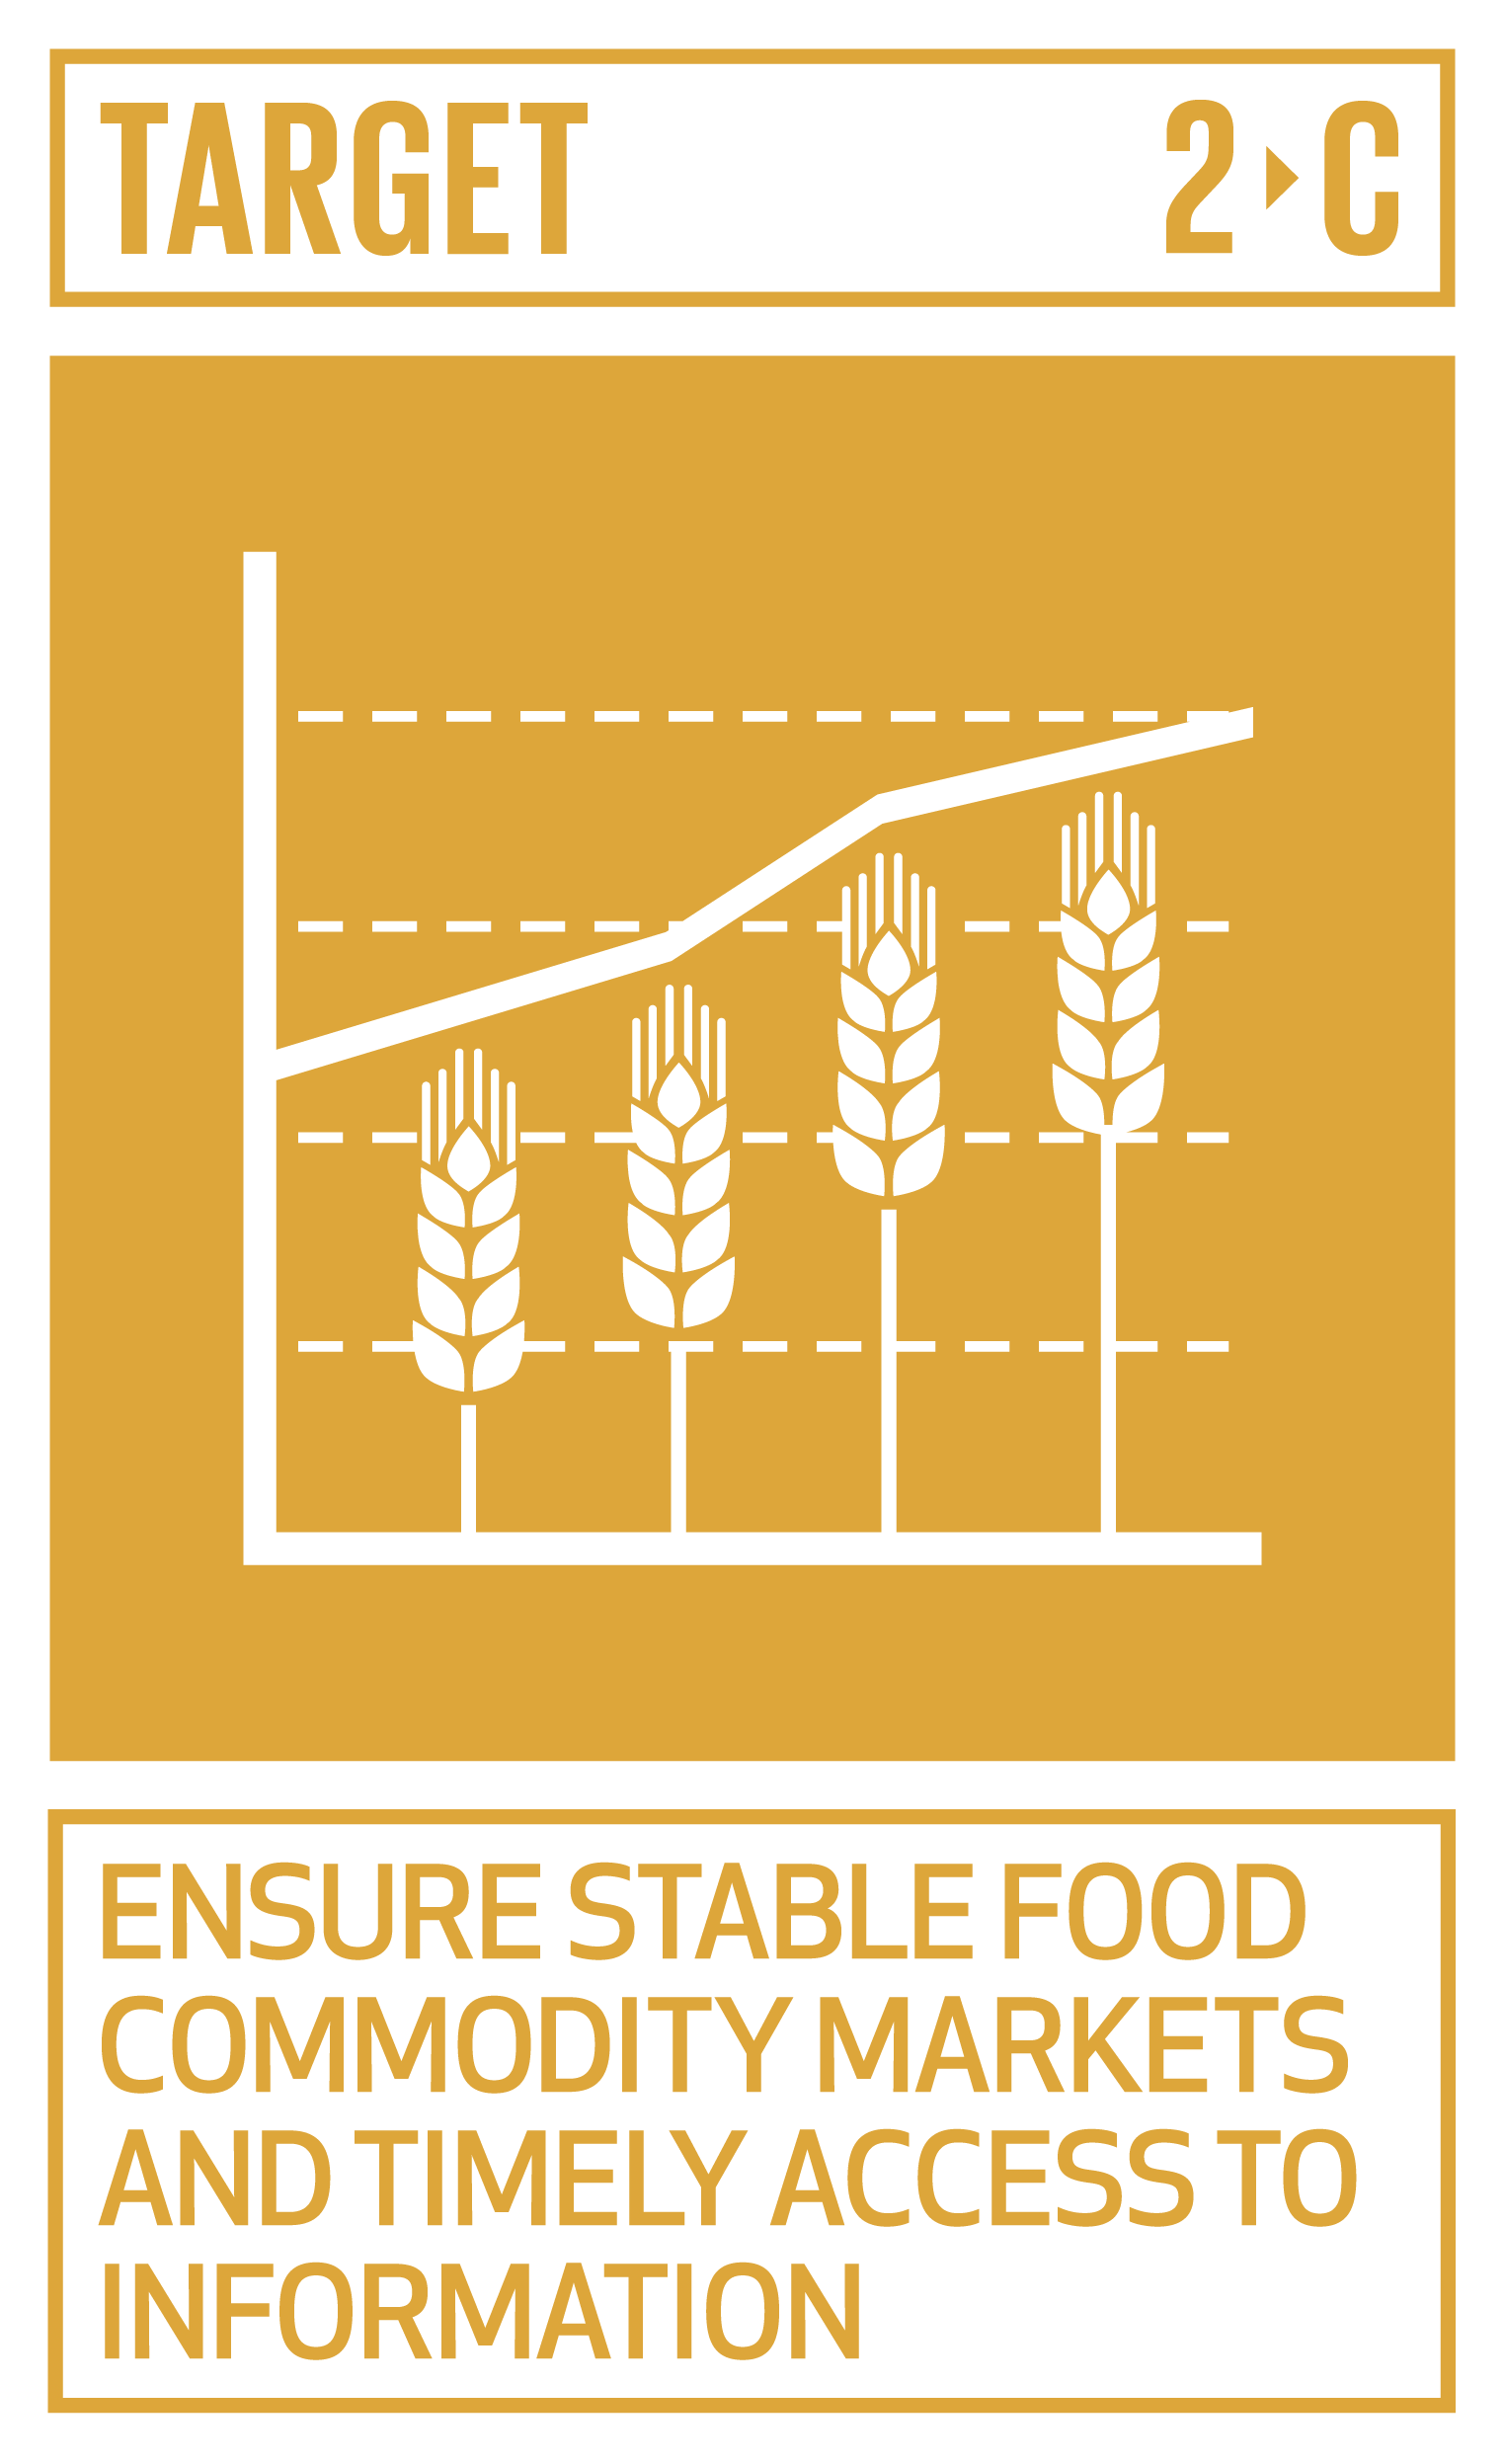 Goal,target,永續發展目標SDGs2目標2.C確保穩定的糧食商品市場和及時獲得資訊